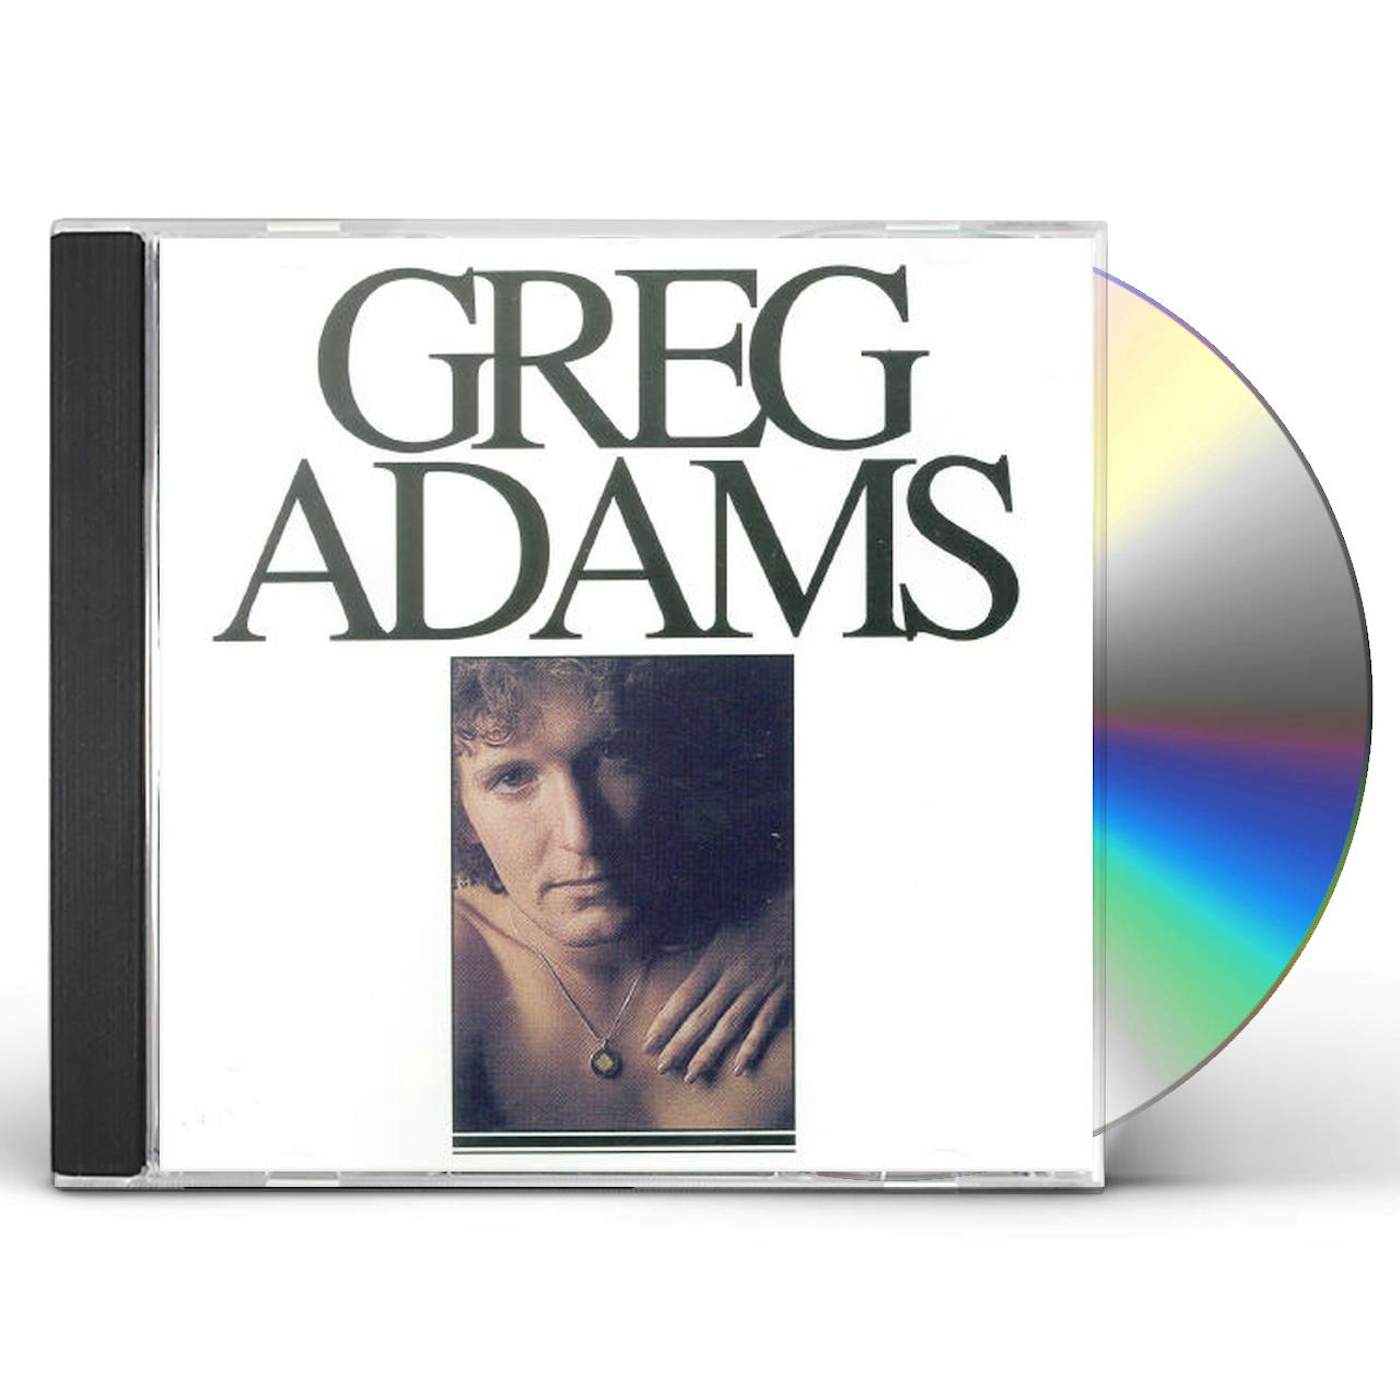 GREG ADAMS CD